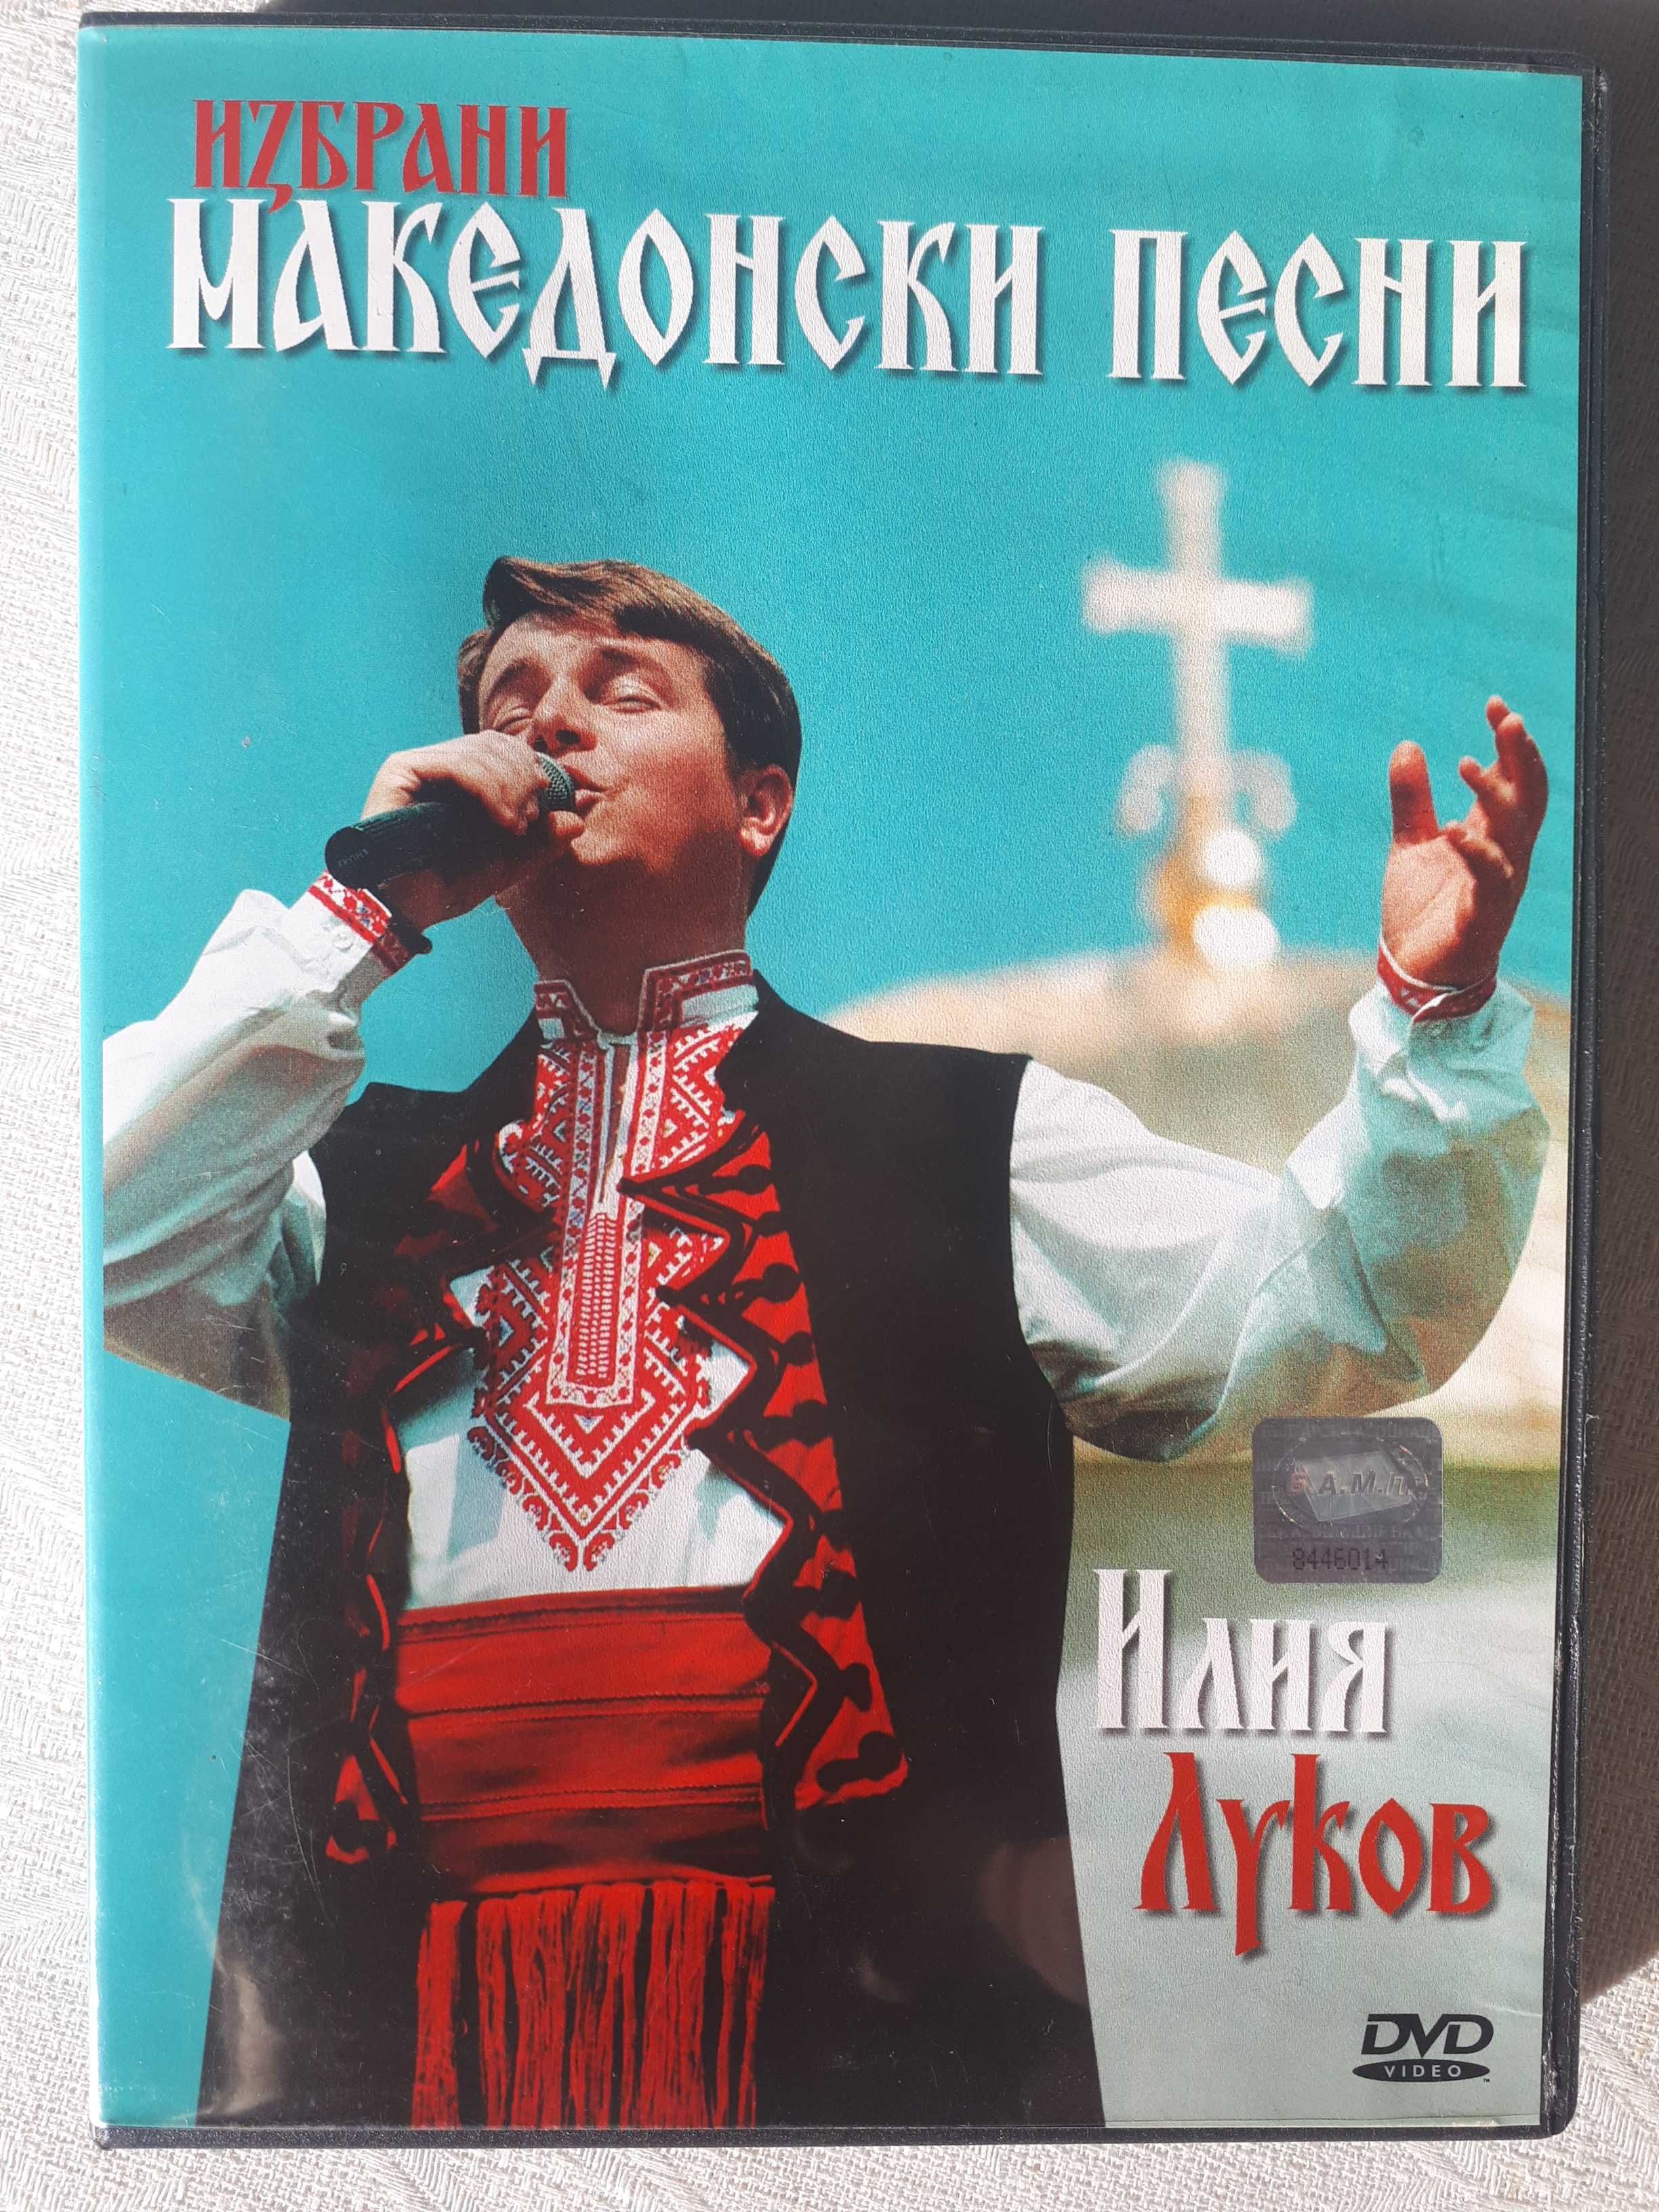 DVD - Илия Луков, Ибро Лолов, караоке, филм Истината за Орфей